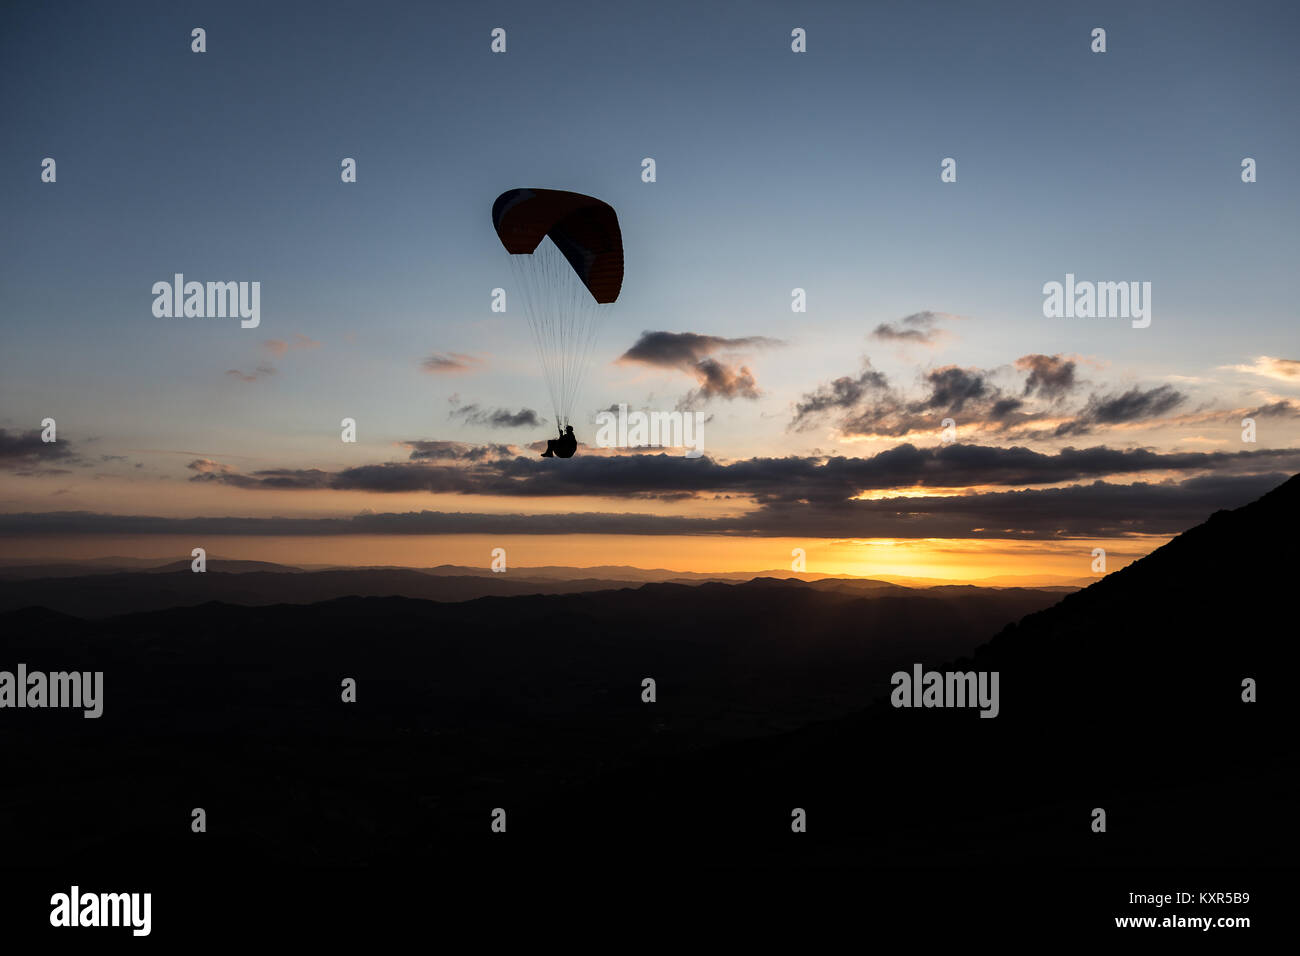 Schöne aufnahme eines Gleitschirms silhouette Fliegen über Monte Cucco (Umbrien, Italien) mit Sonnenuntergang im Hintergrund, mit schönen Farben und dunklen Töne Stockfoto